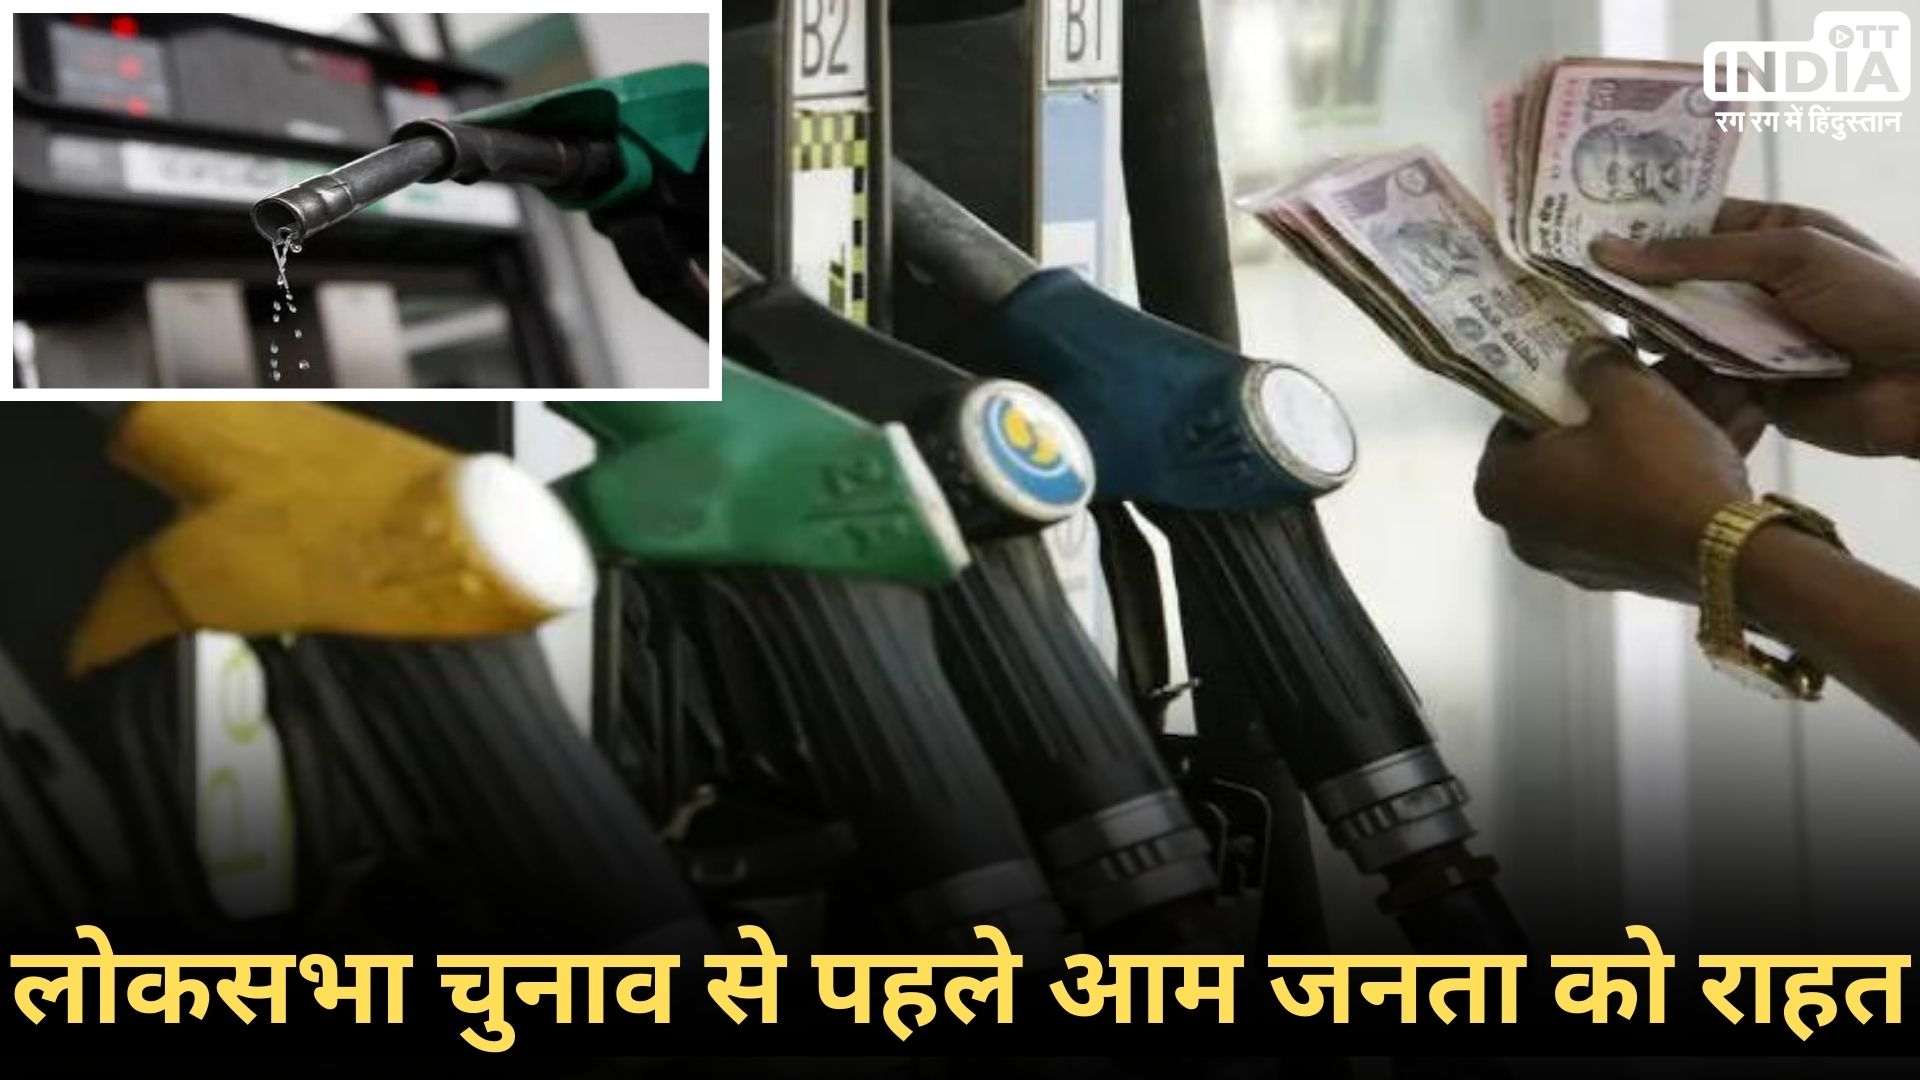 Petrol-Diesel Price: देश में कम हुए पेट्रोल-डीजल के दाम, कल सुबह 6 बजे से नई कीमत लागू